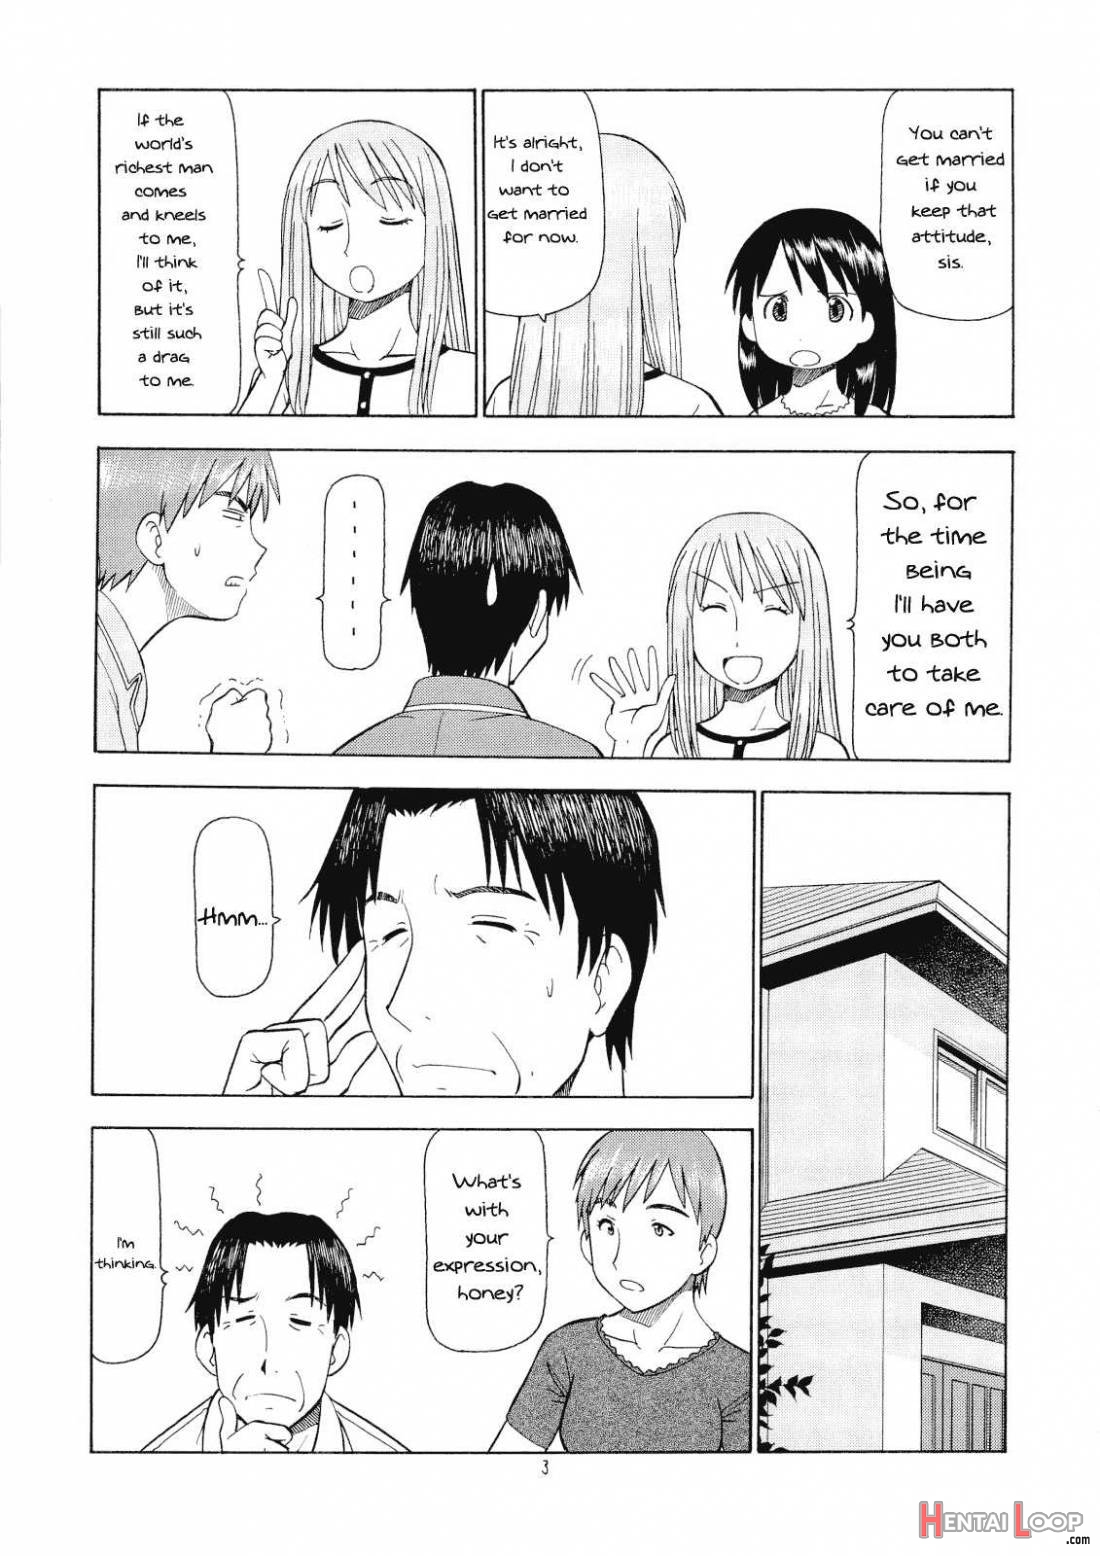 Erobata Asagi page 4